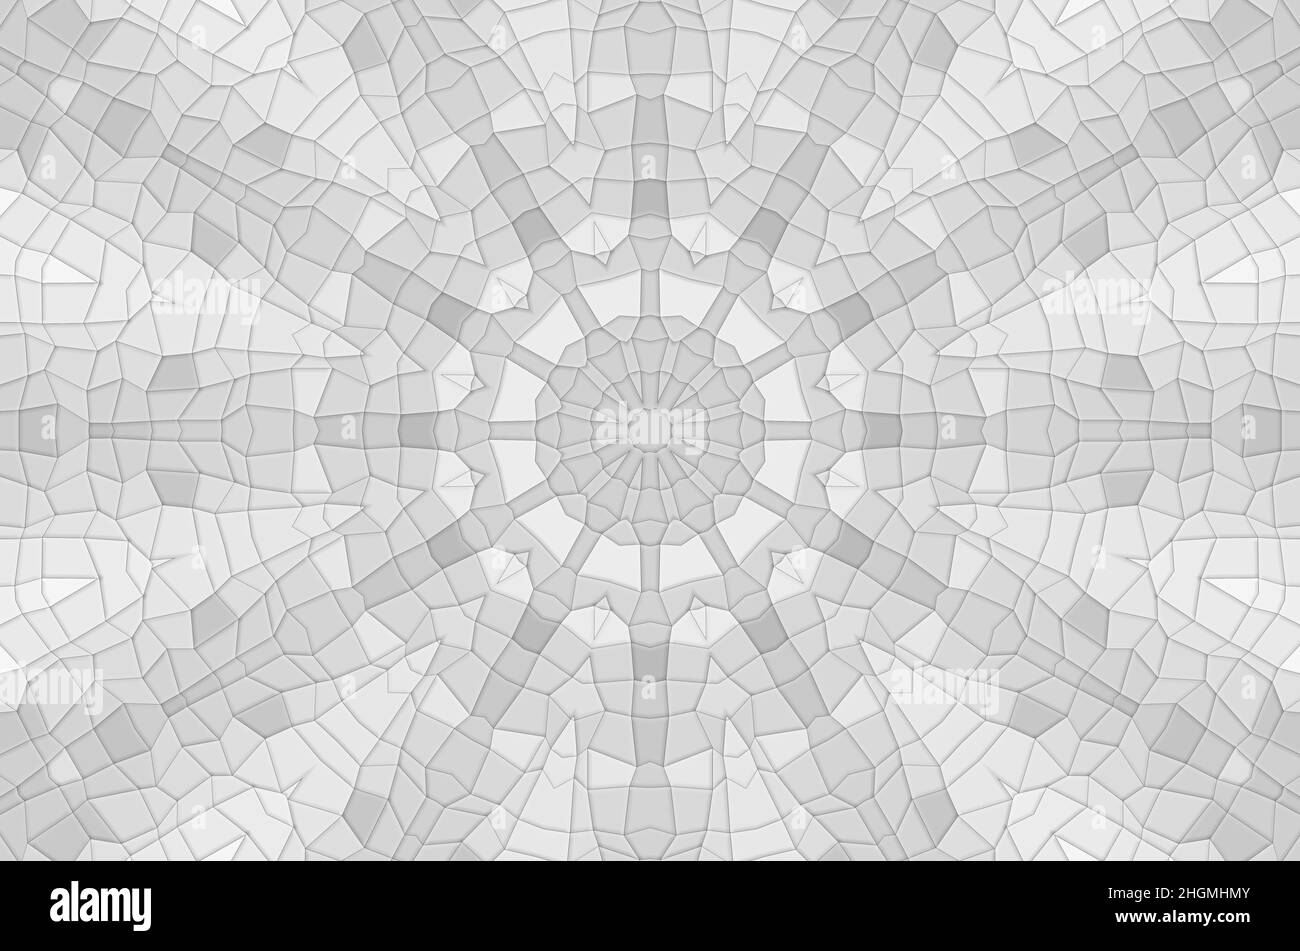 Un arrière-plan abstrait clair avec un motif kaléidoscopique en mosaïque irrégulière en nuances de gris Banque D'Images